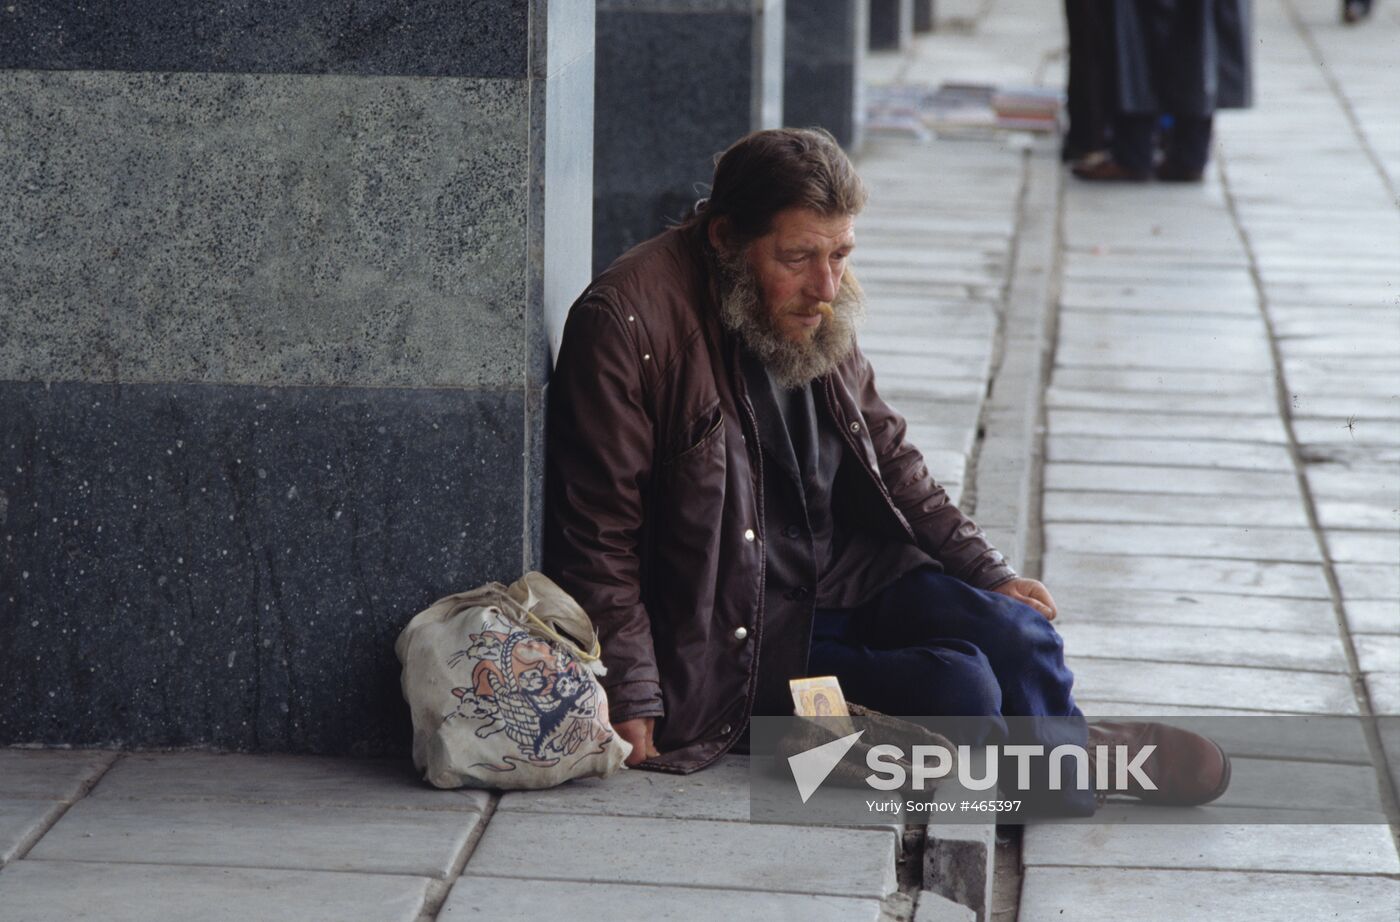 A beggar